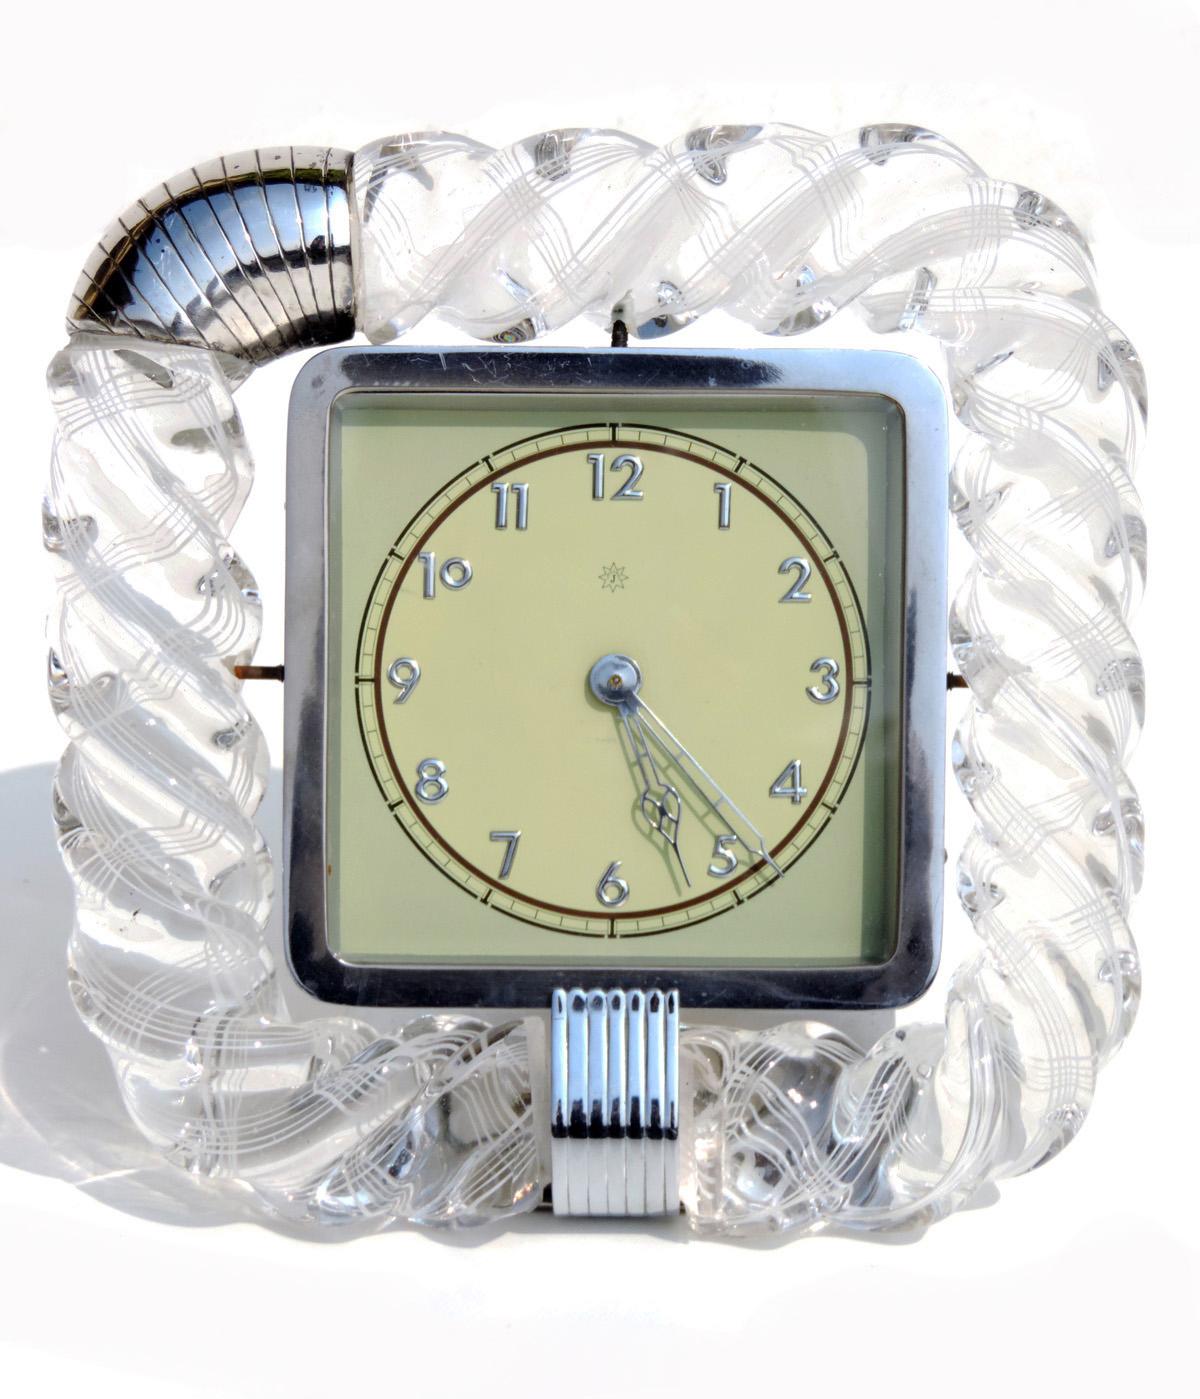 Rahmen aus gedrehtem Muranoglas mit silbernen Details.
Junghans Uhr mit Handaufzug.
Sockel aus Nickel-Messing.
Perfekt funktionierend.
Perfekter Zustand.